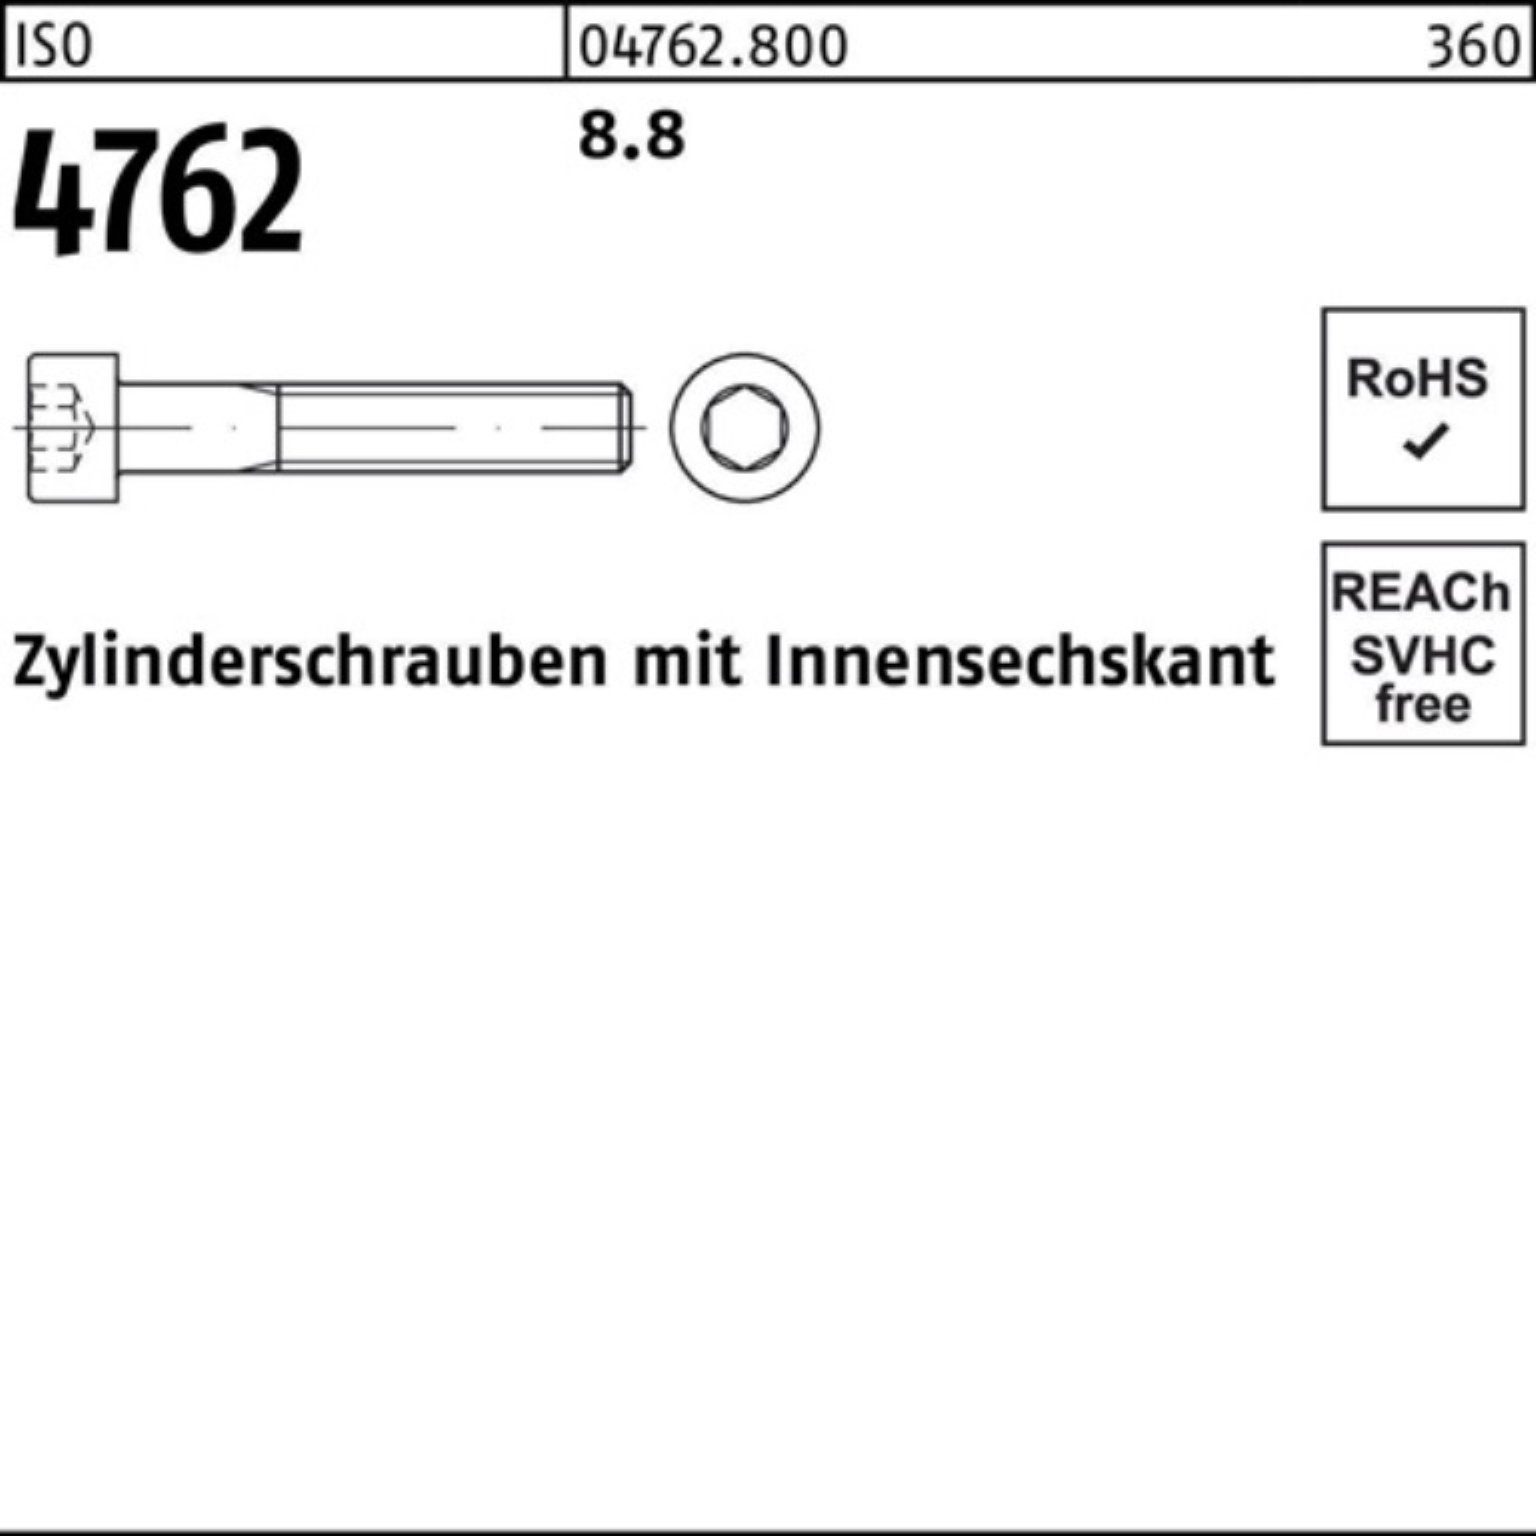 Innen-6kt Stück 1 140 8.8 100er 4762 ISO I Zylinderschraube Reyher Zylinderschraube Pack M22x